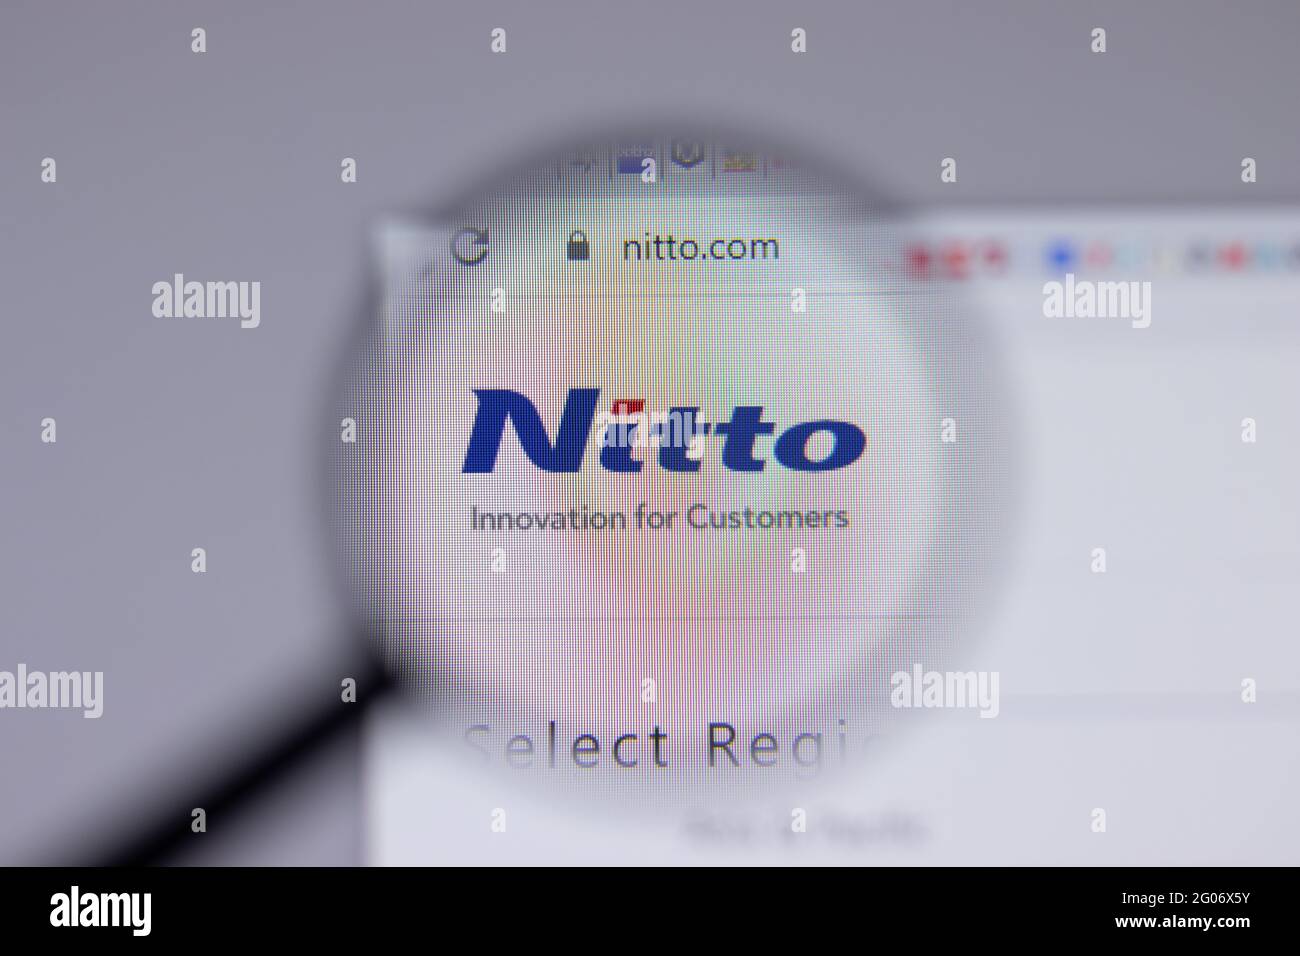 Los Angeles, Californie, Etats-Unis - 1er juin 2021 : logo ou icône Nitto sur la page du site Web, Editorial Banque D'Images